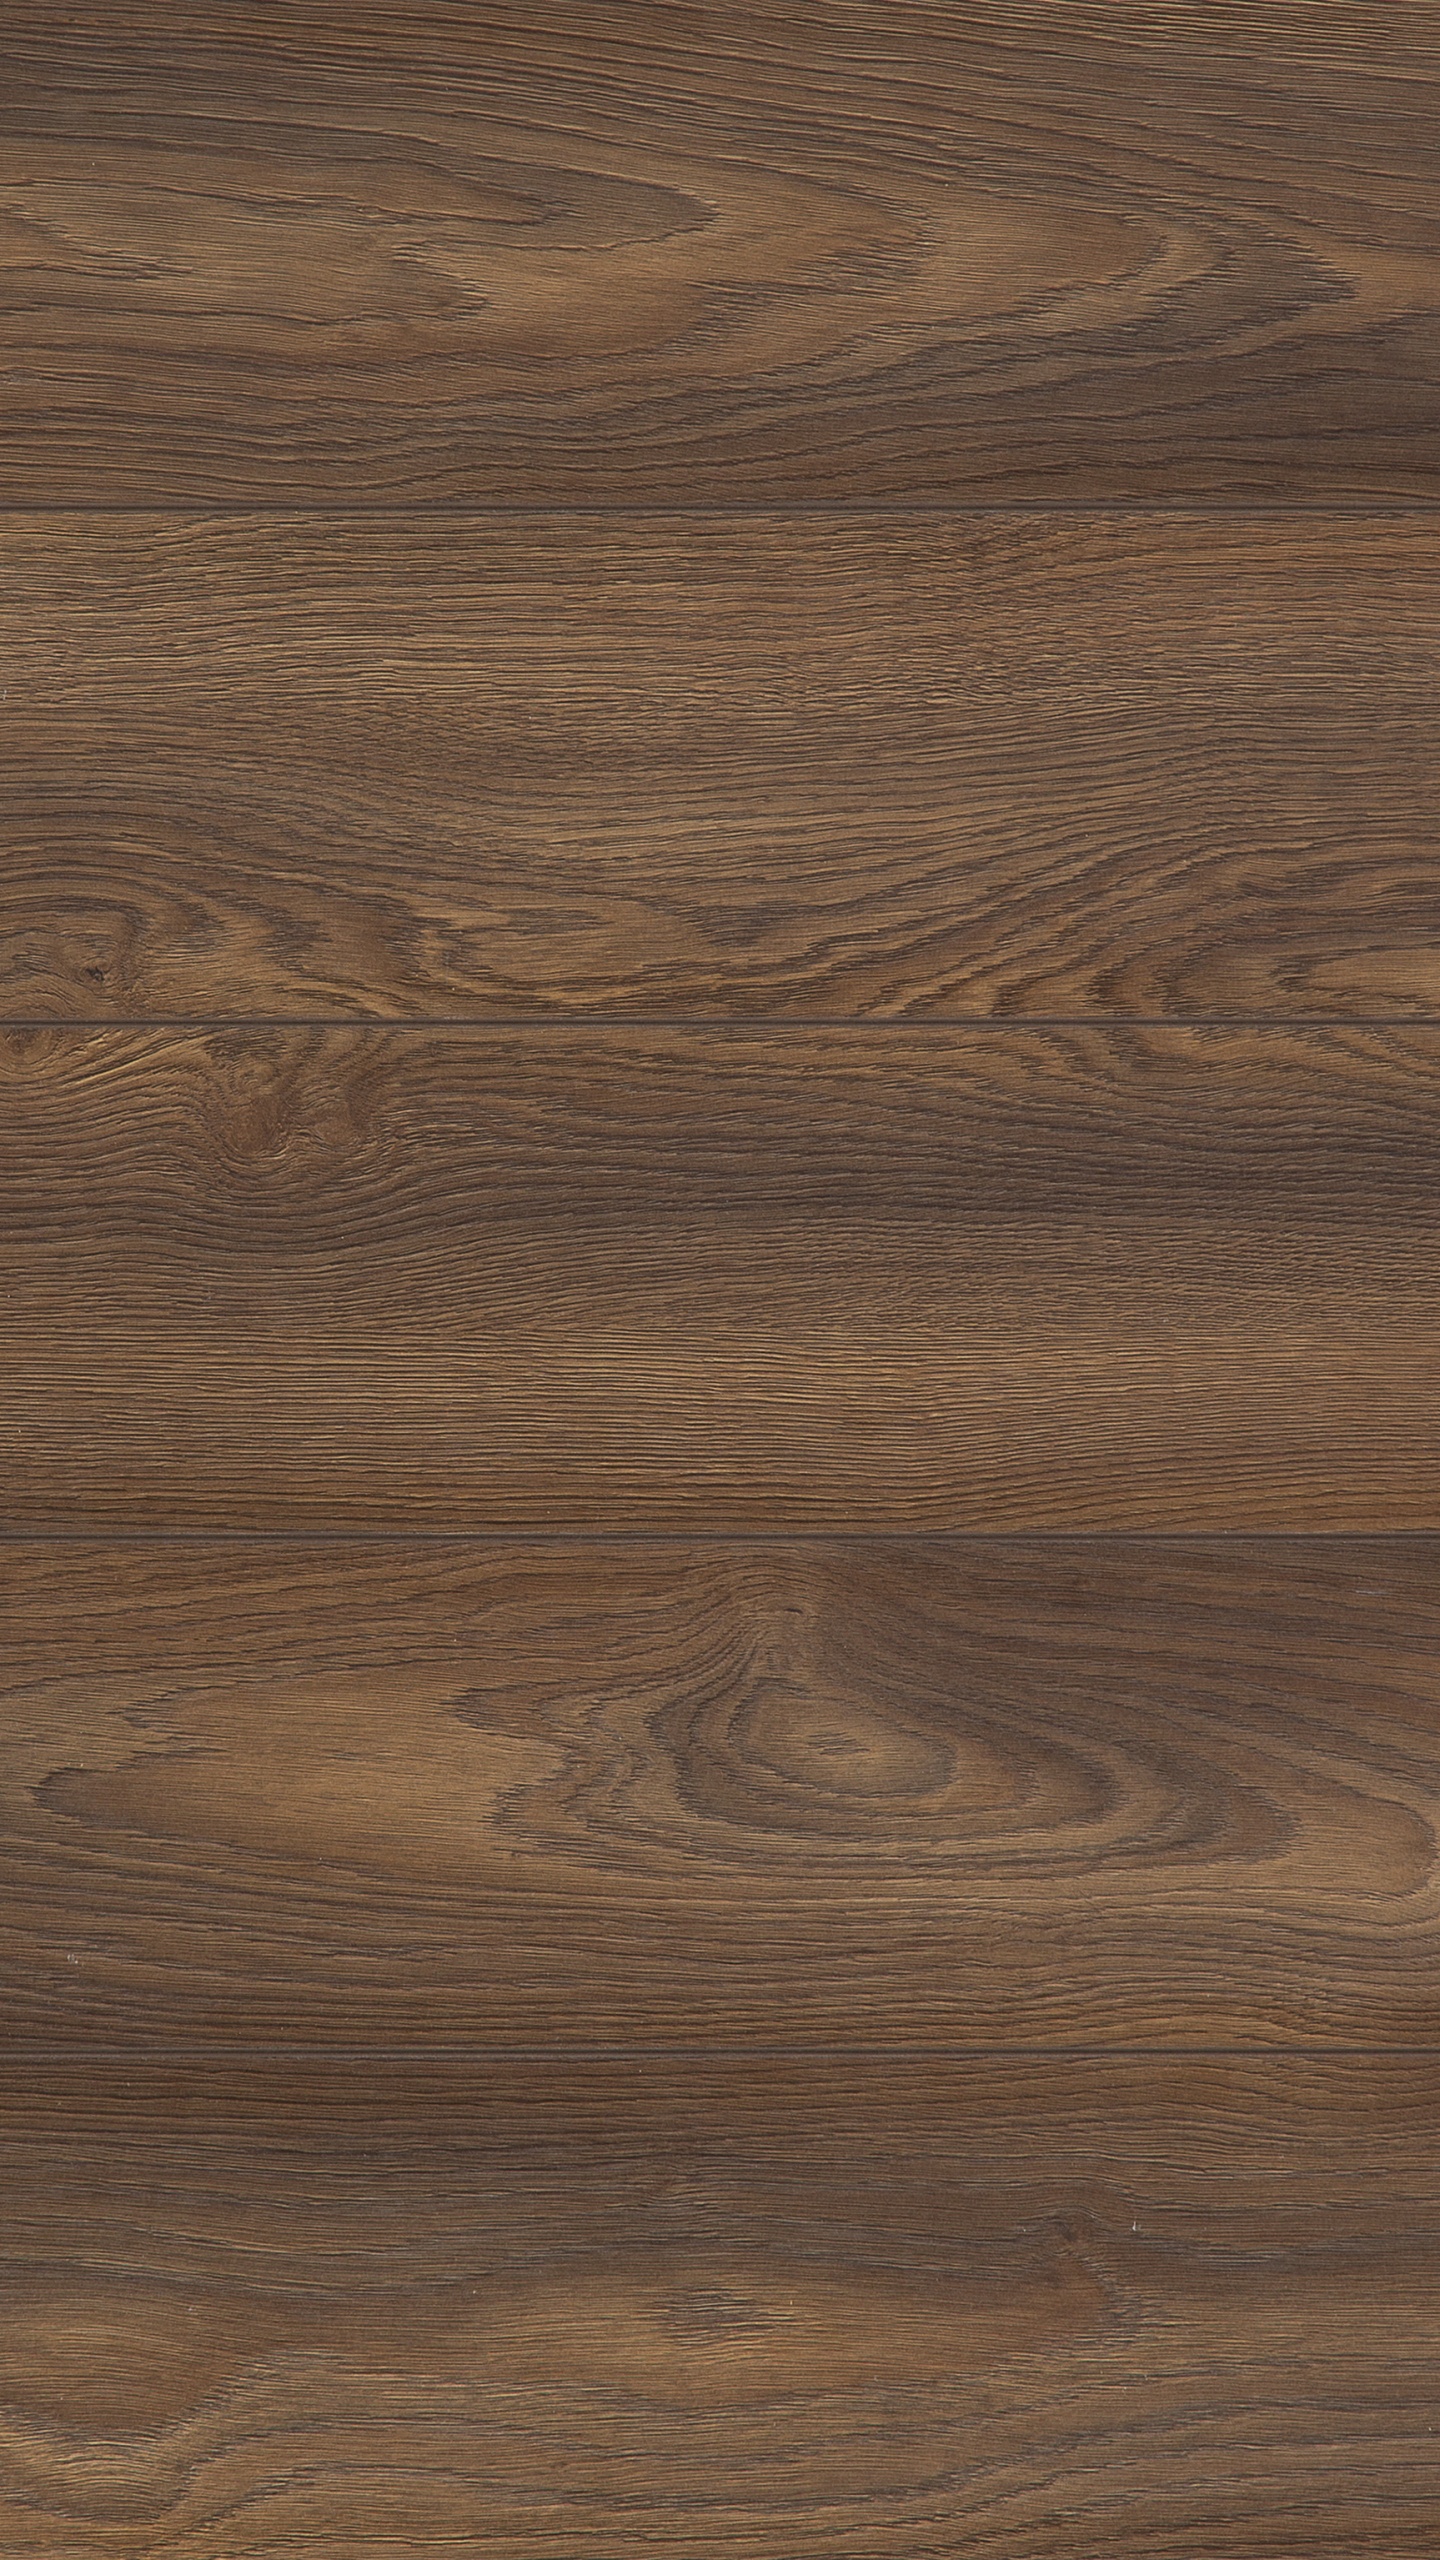 Brown Wooden Parquet Floor Tiles. Wallpaper in 1440x2560 Resolution